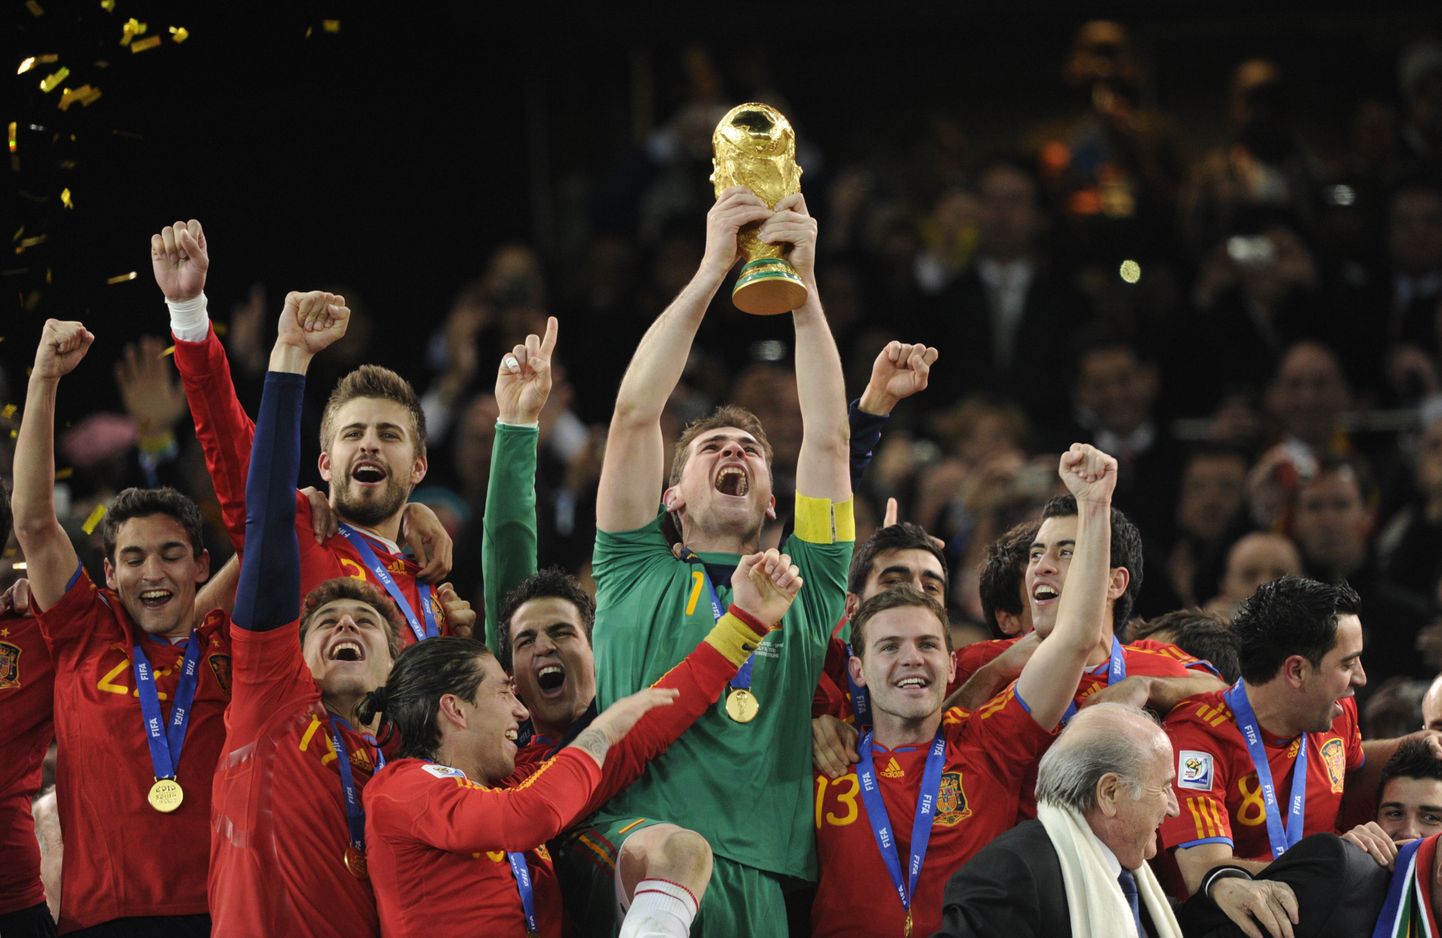 Hispaania jalgpallikoondis tuli 2010. aastal maailmameistriks. 20 aastat hiljem soovib Hispaania korraldada MM-finaalturniiri koos Portugaliga.